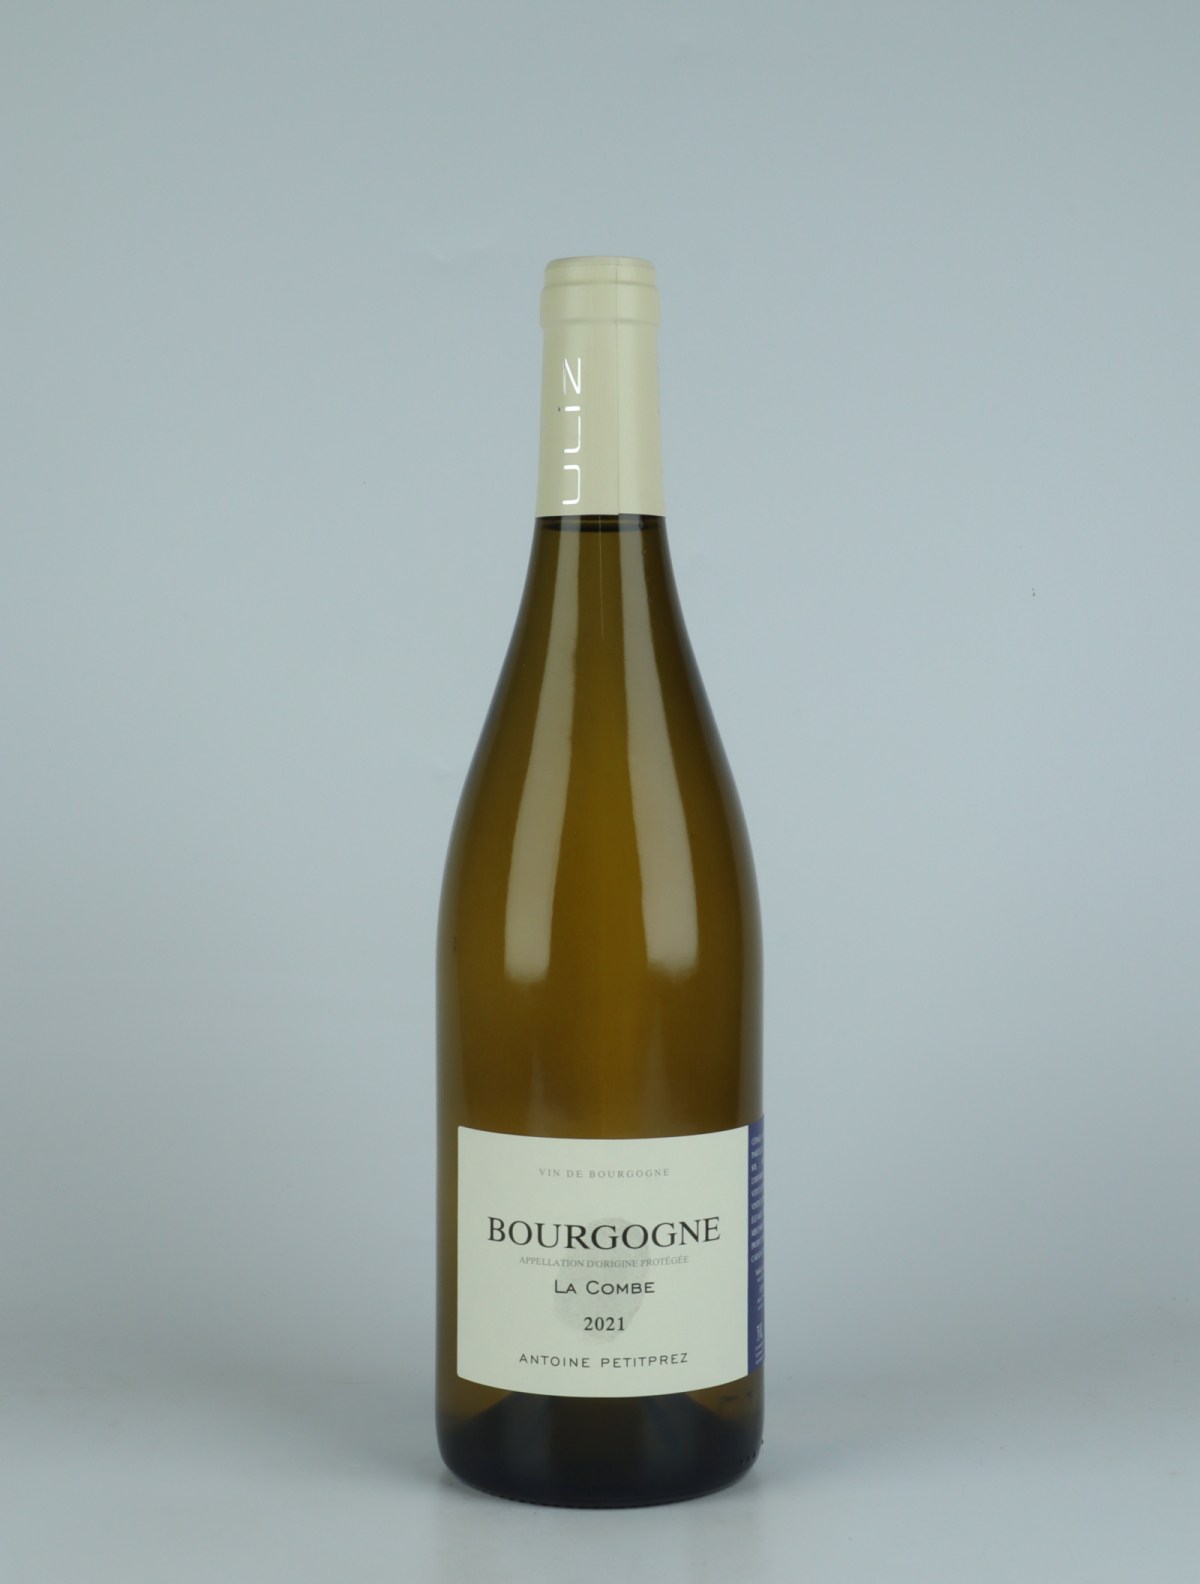 A bottle 2021 Bourgogne Blanc - La Combe White wine from Antoine Petitprez, Burgundy in France